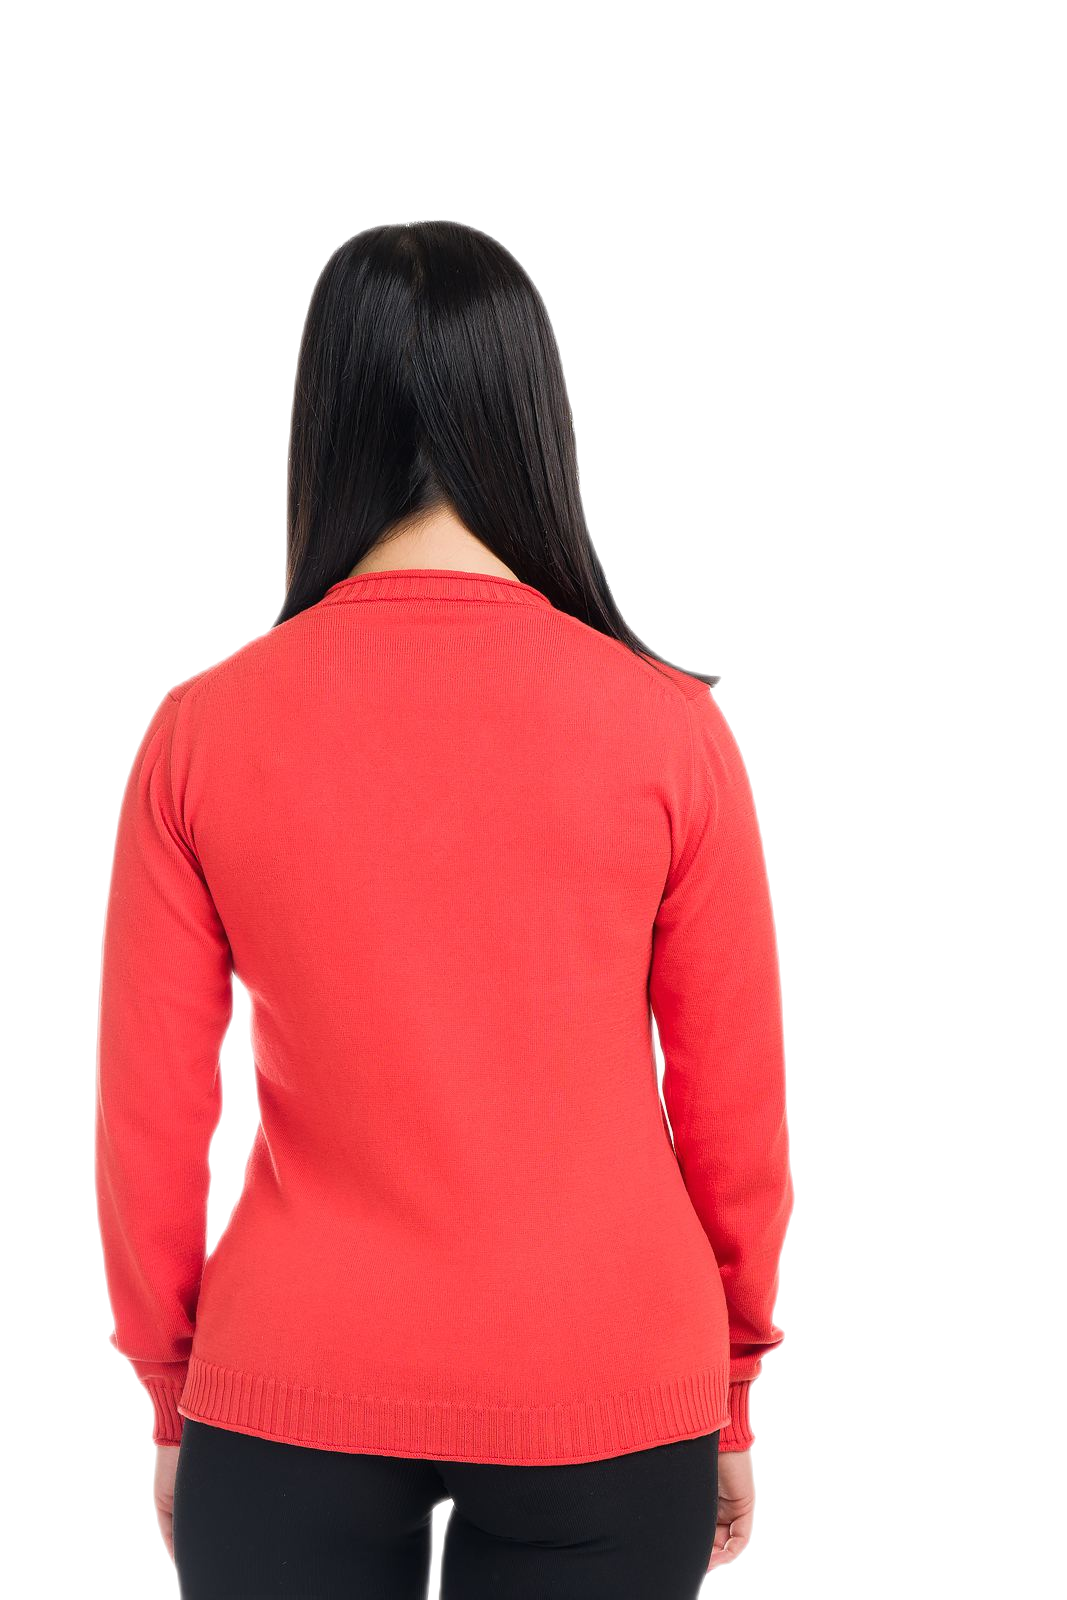 retro maglia donna leggera manica lunga rossa